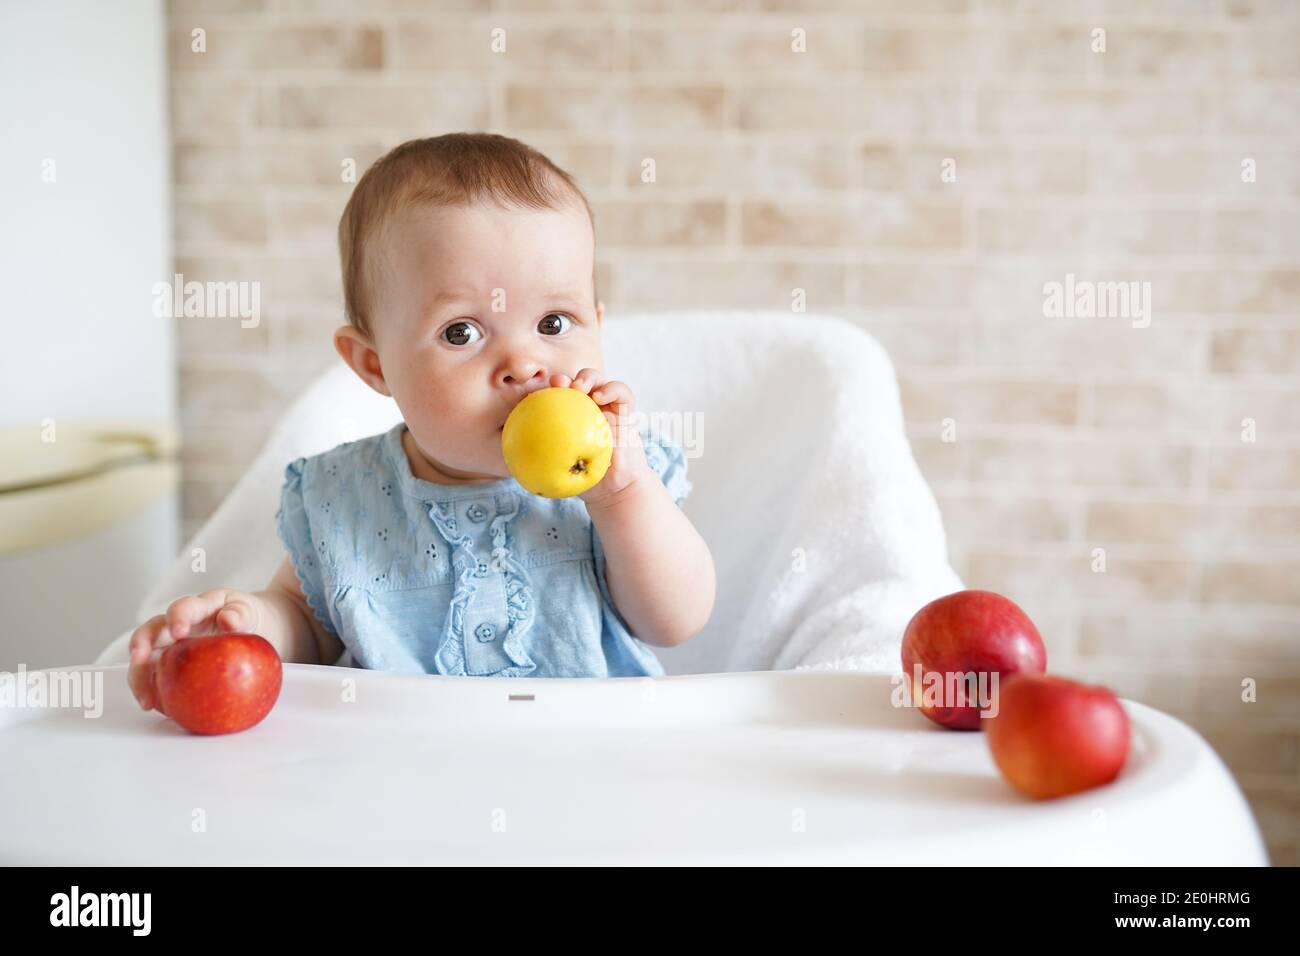 Mignon bébé manger des fruits. Une petite fille piquant une pomme jaune  assise dans une chaise haute blanche dans une cuisine ensoleillée. Une  alimentation saine pour les enfants. Nourriture solide pour infuser